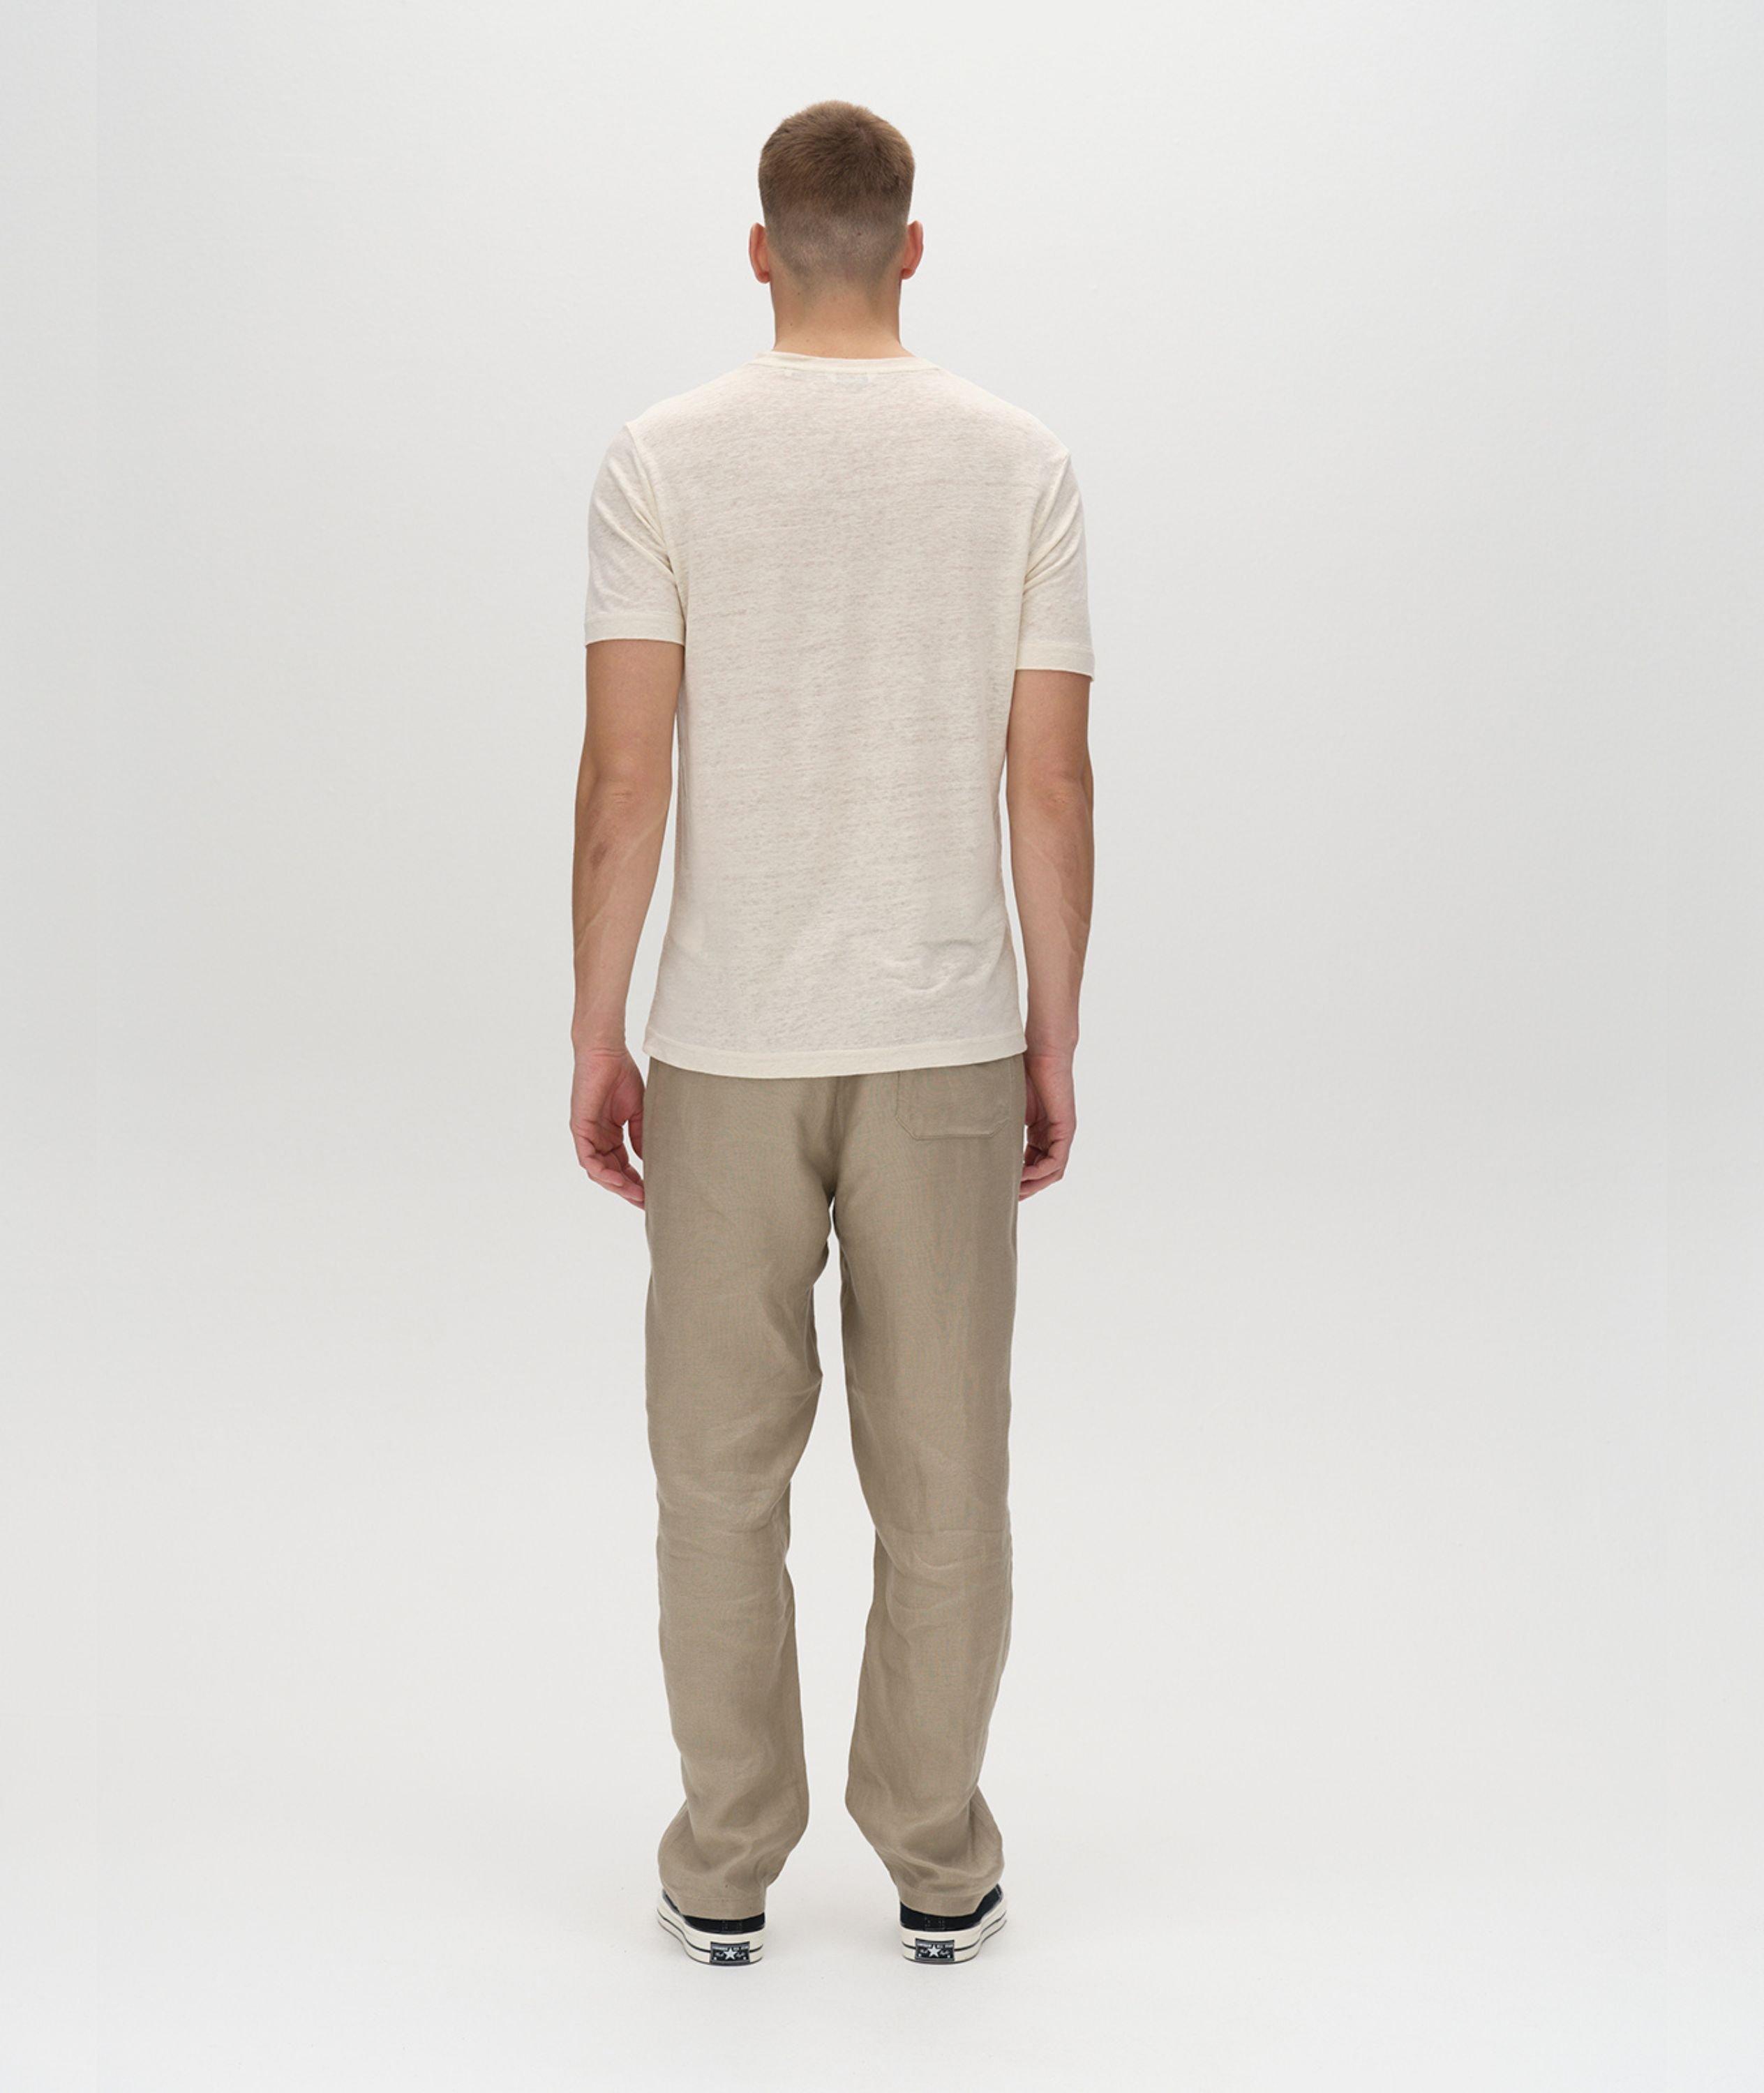 Duke Linen T-Shirt image 3